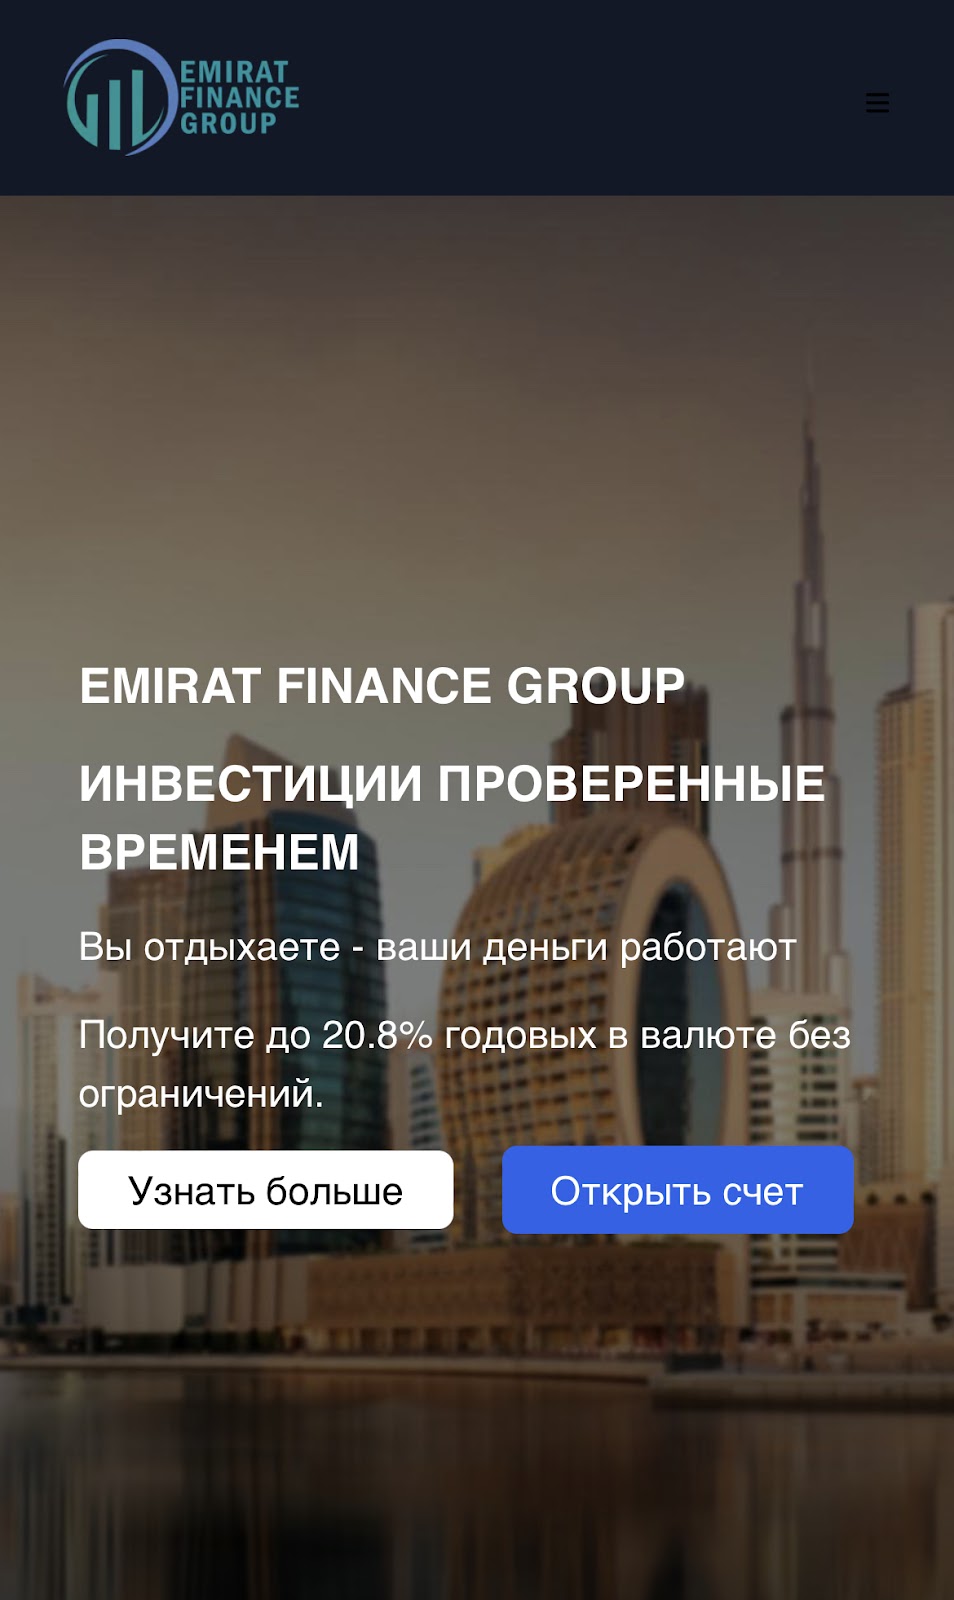 emirate finance group отзывы